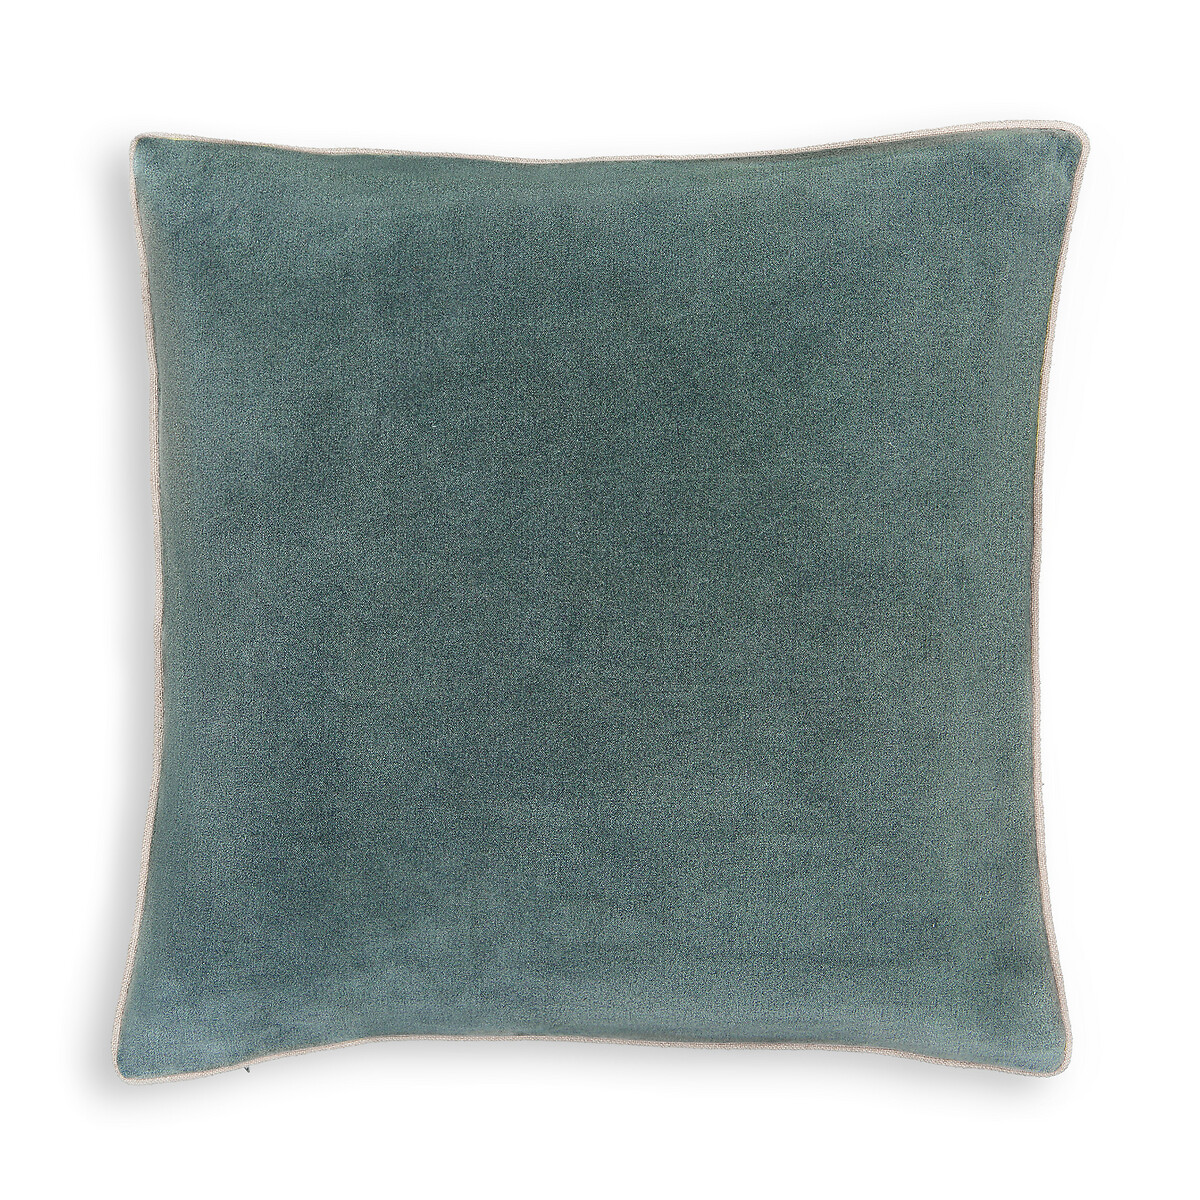 Чехол На подушку из 100 велюра Kontura 50 x 50 см зеленый